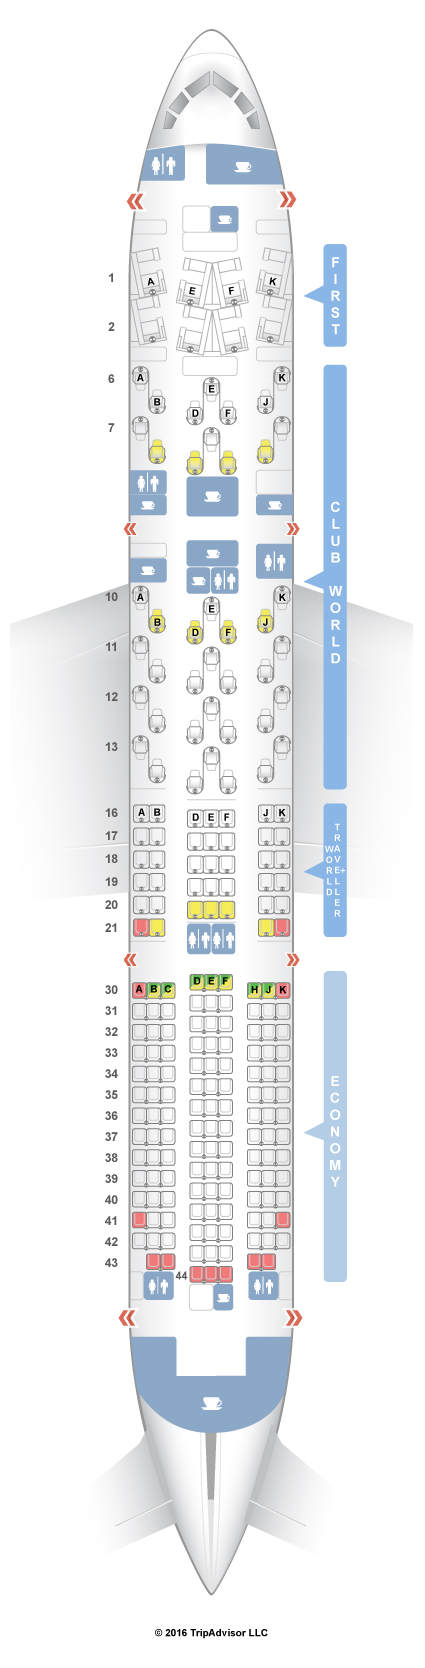 Seatguru Seat Map British Airways Boeing 787 9 789